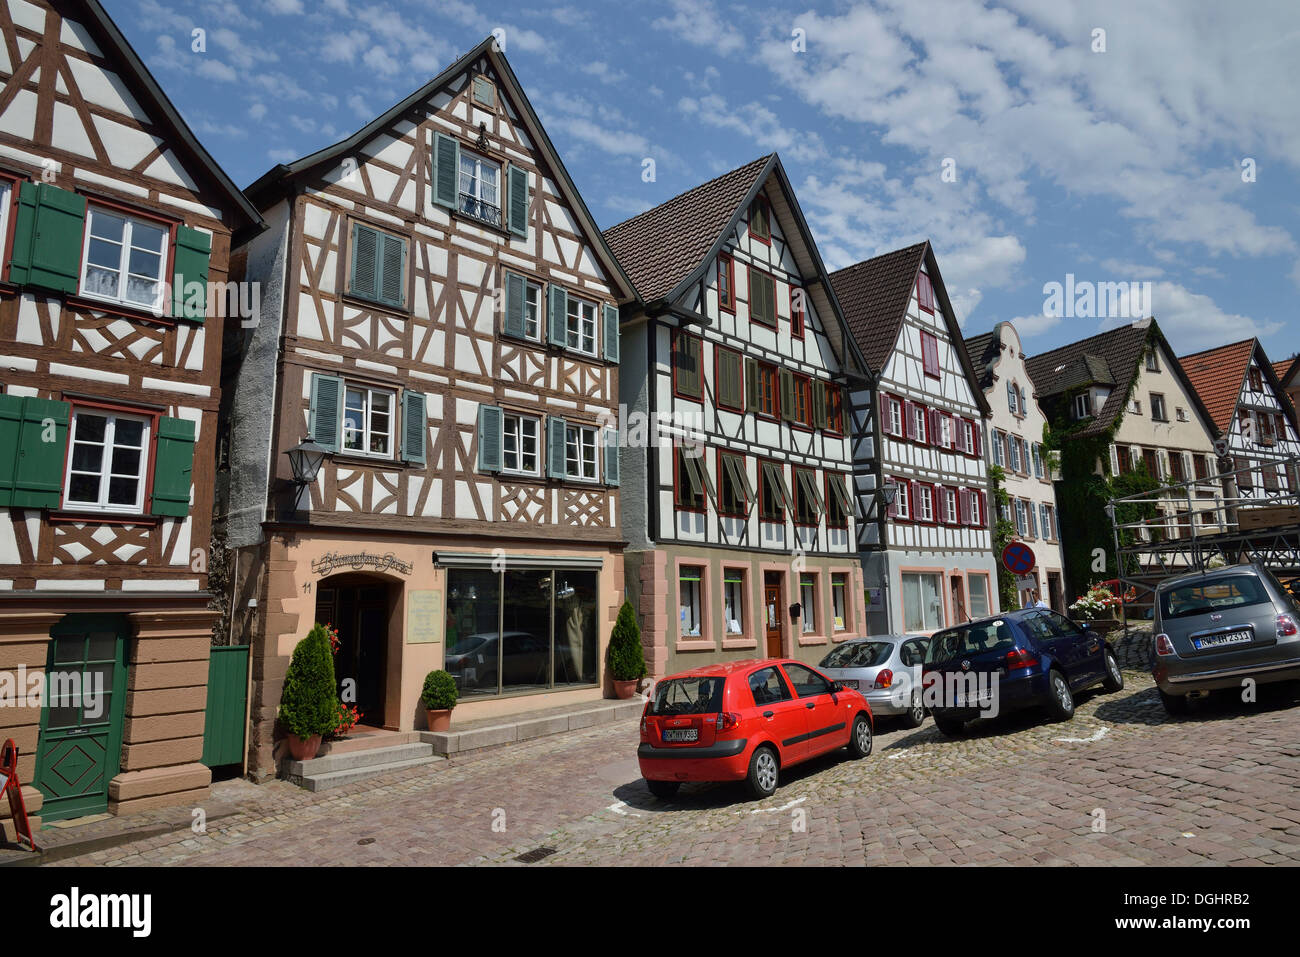 Protection du patrimoine-façades de maisons à colombages sur la place Marktplatz, Schiltach, vallée de la Kinzig, Forêt-Noire Banque D'Images